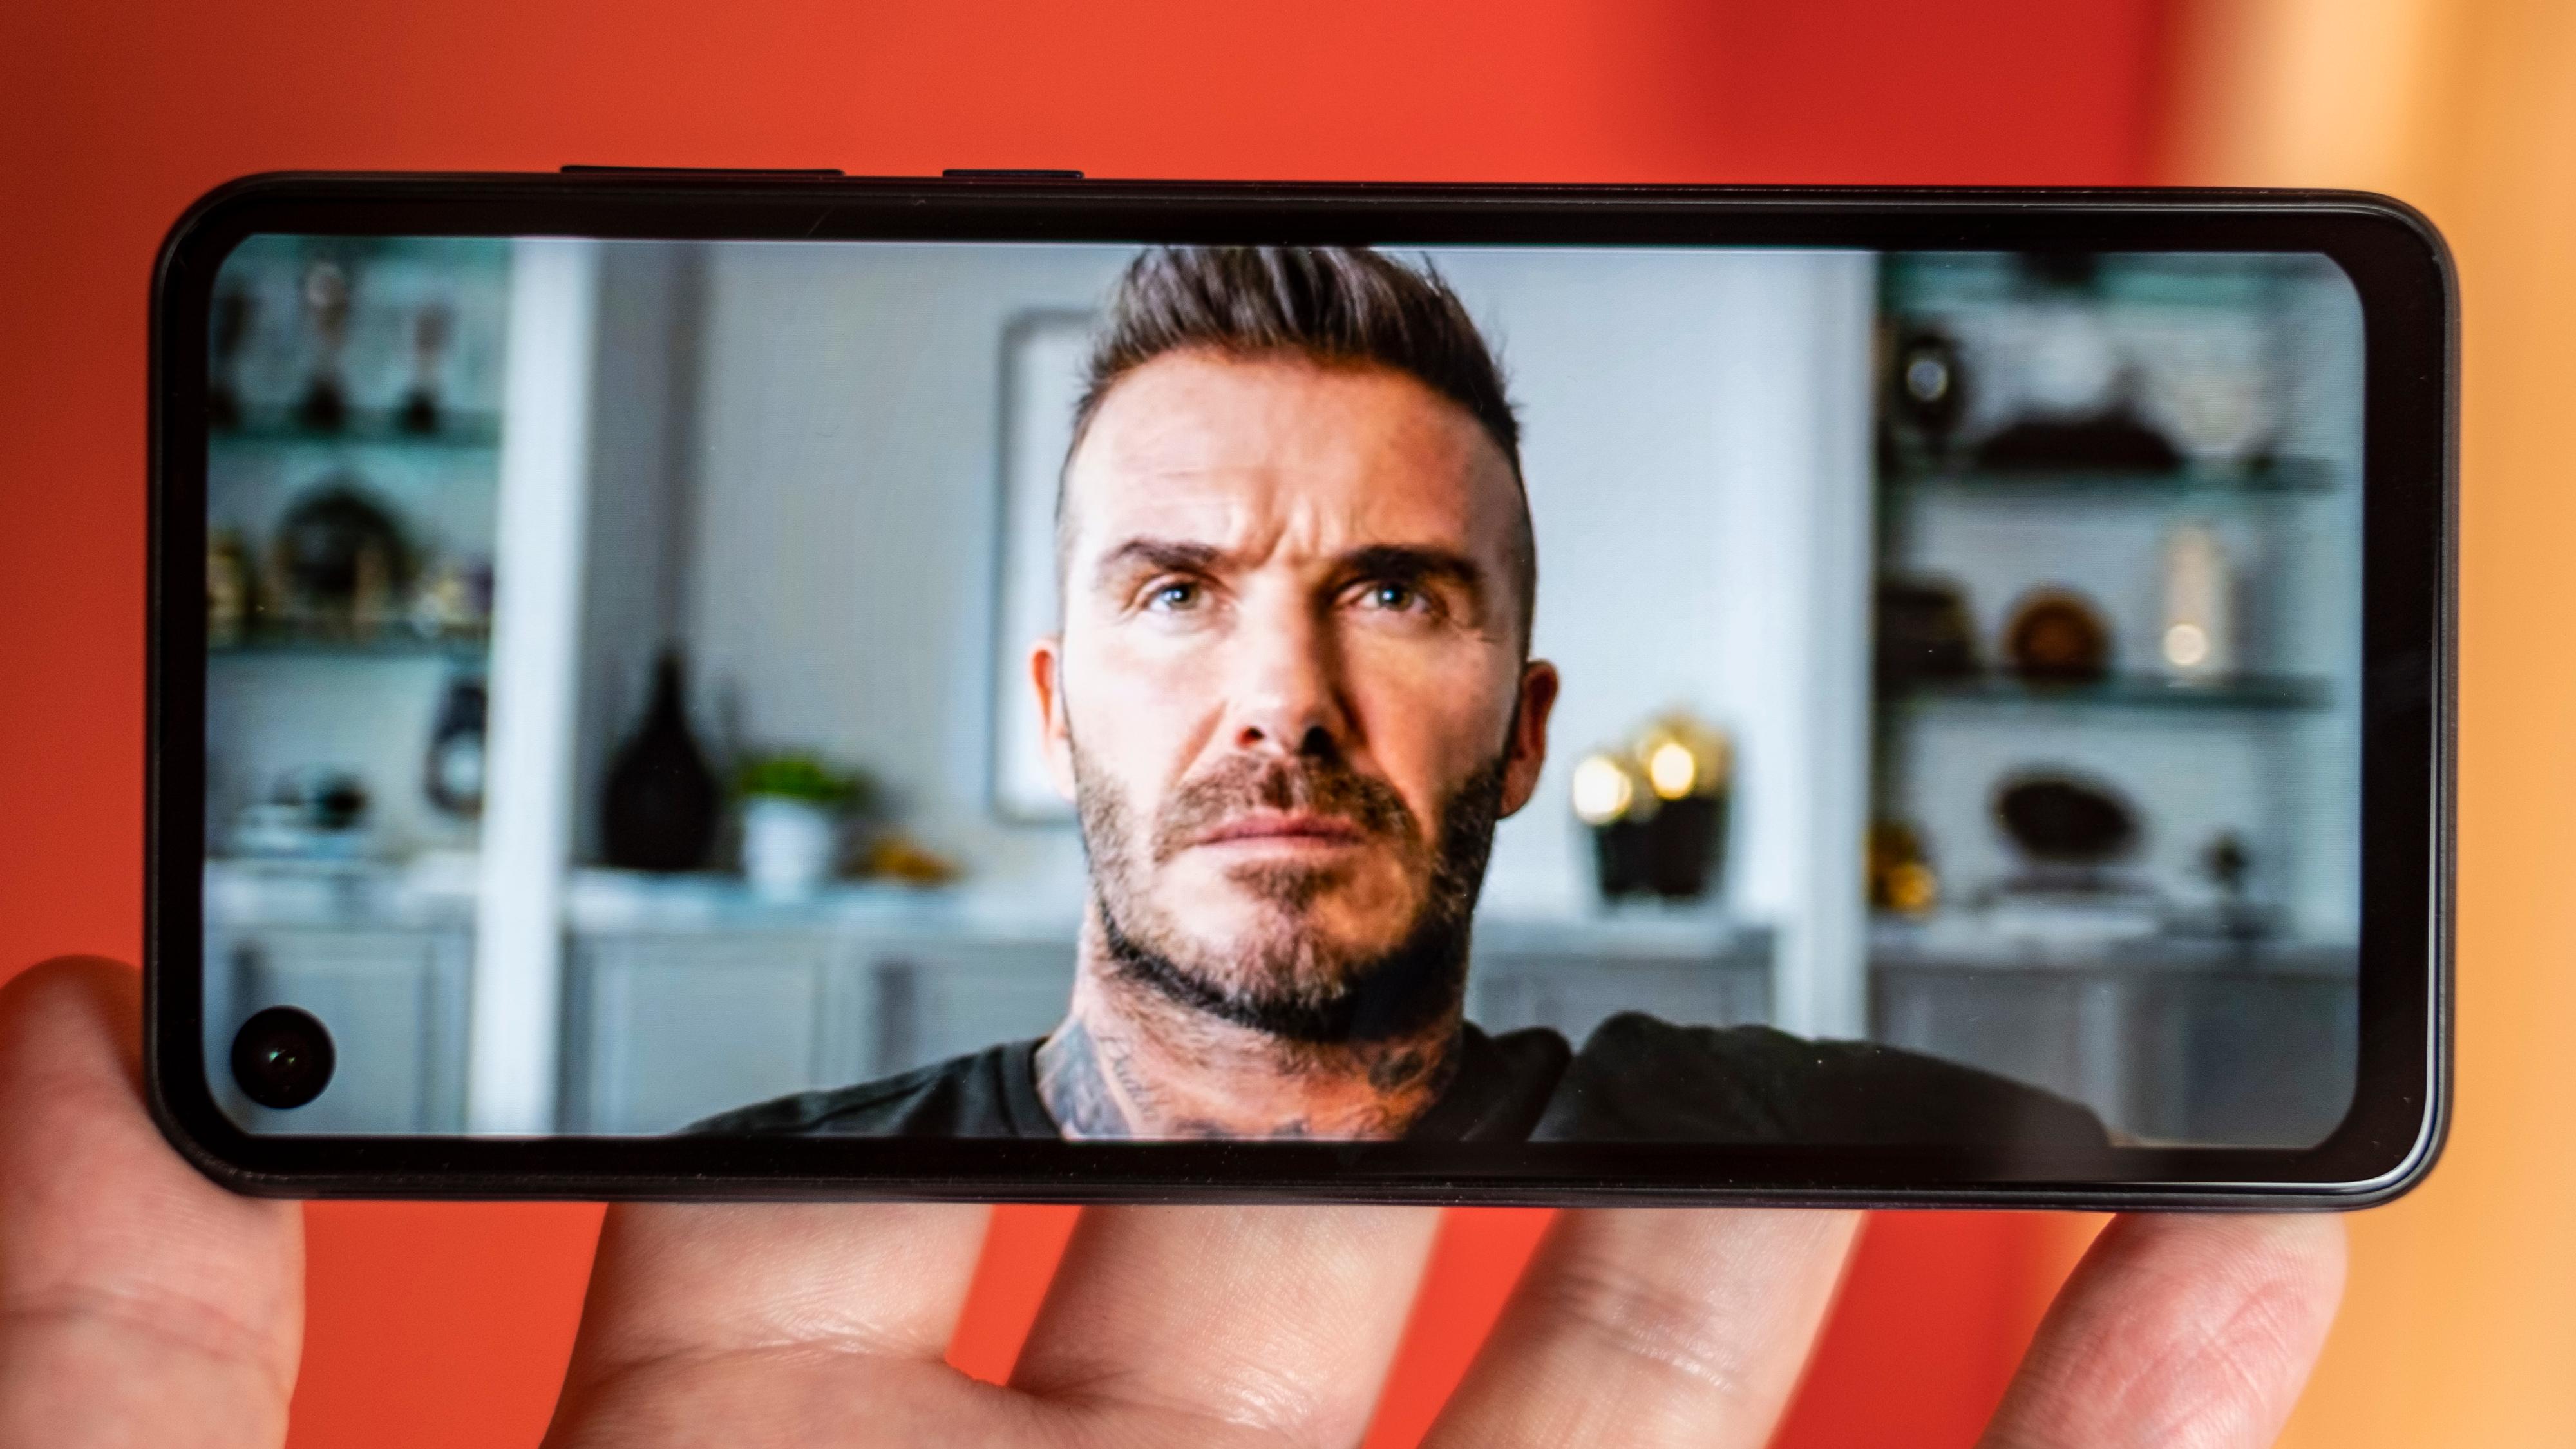 Slik kan 21:9-skjermen være på sitt beste. Deadpool-reklamen er i 21:9, og det lille av David Beckhams hårsveis som går utenom skjermen er ment å gjøre det. I Youtube får du også brukt hele skjermen når du vil.